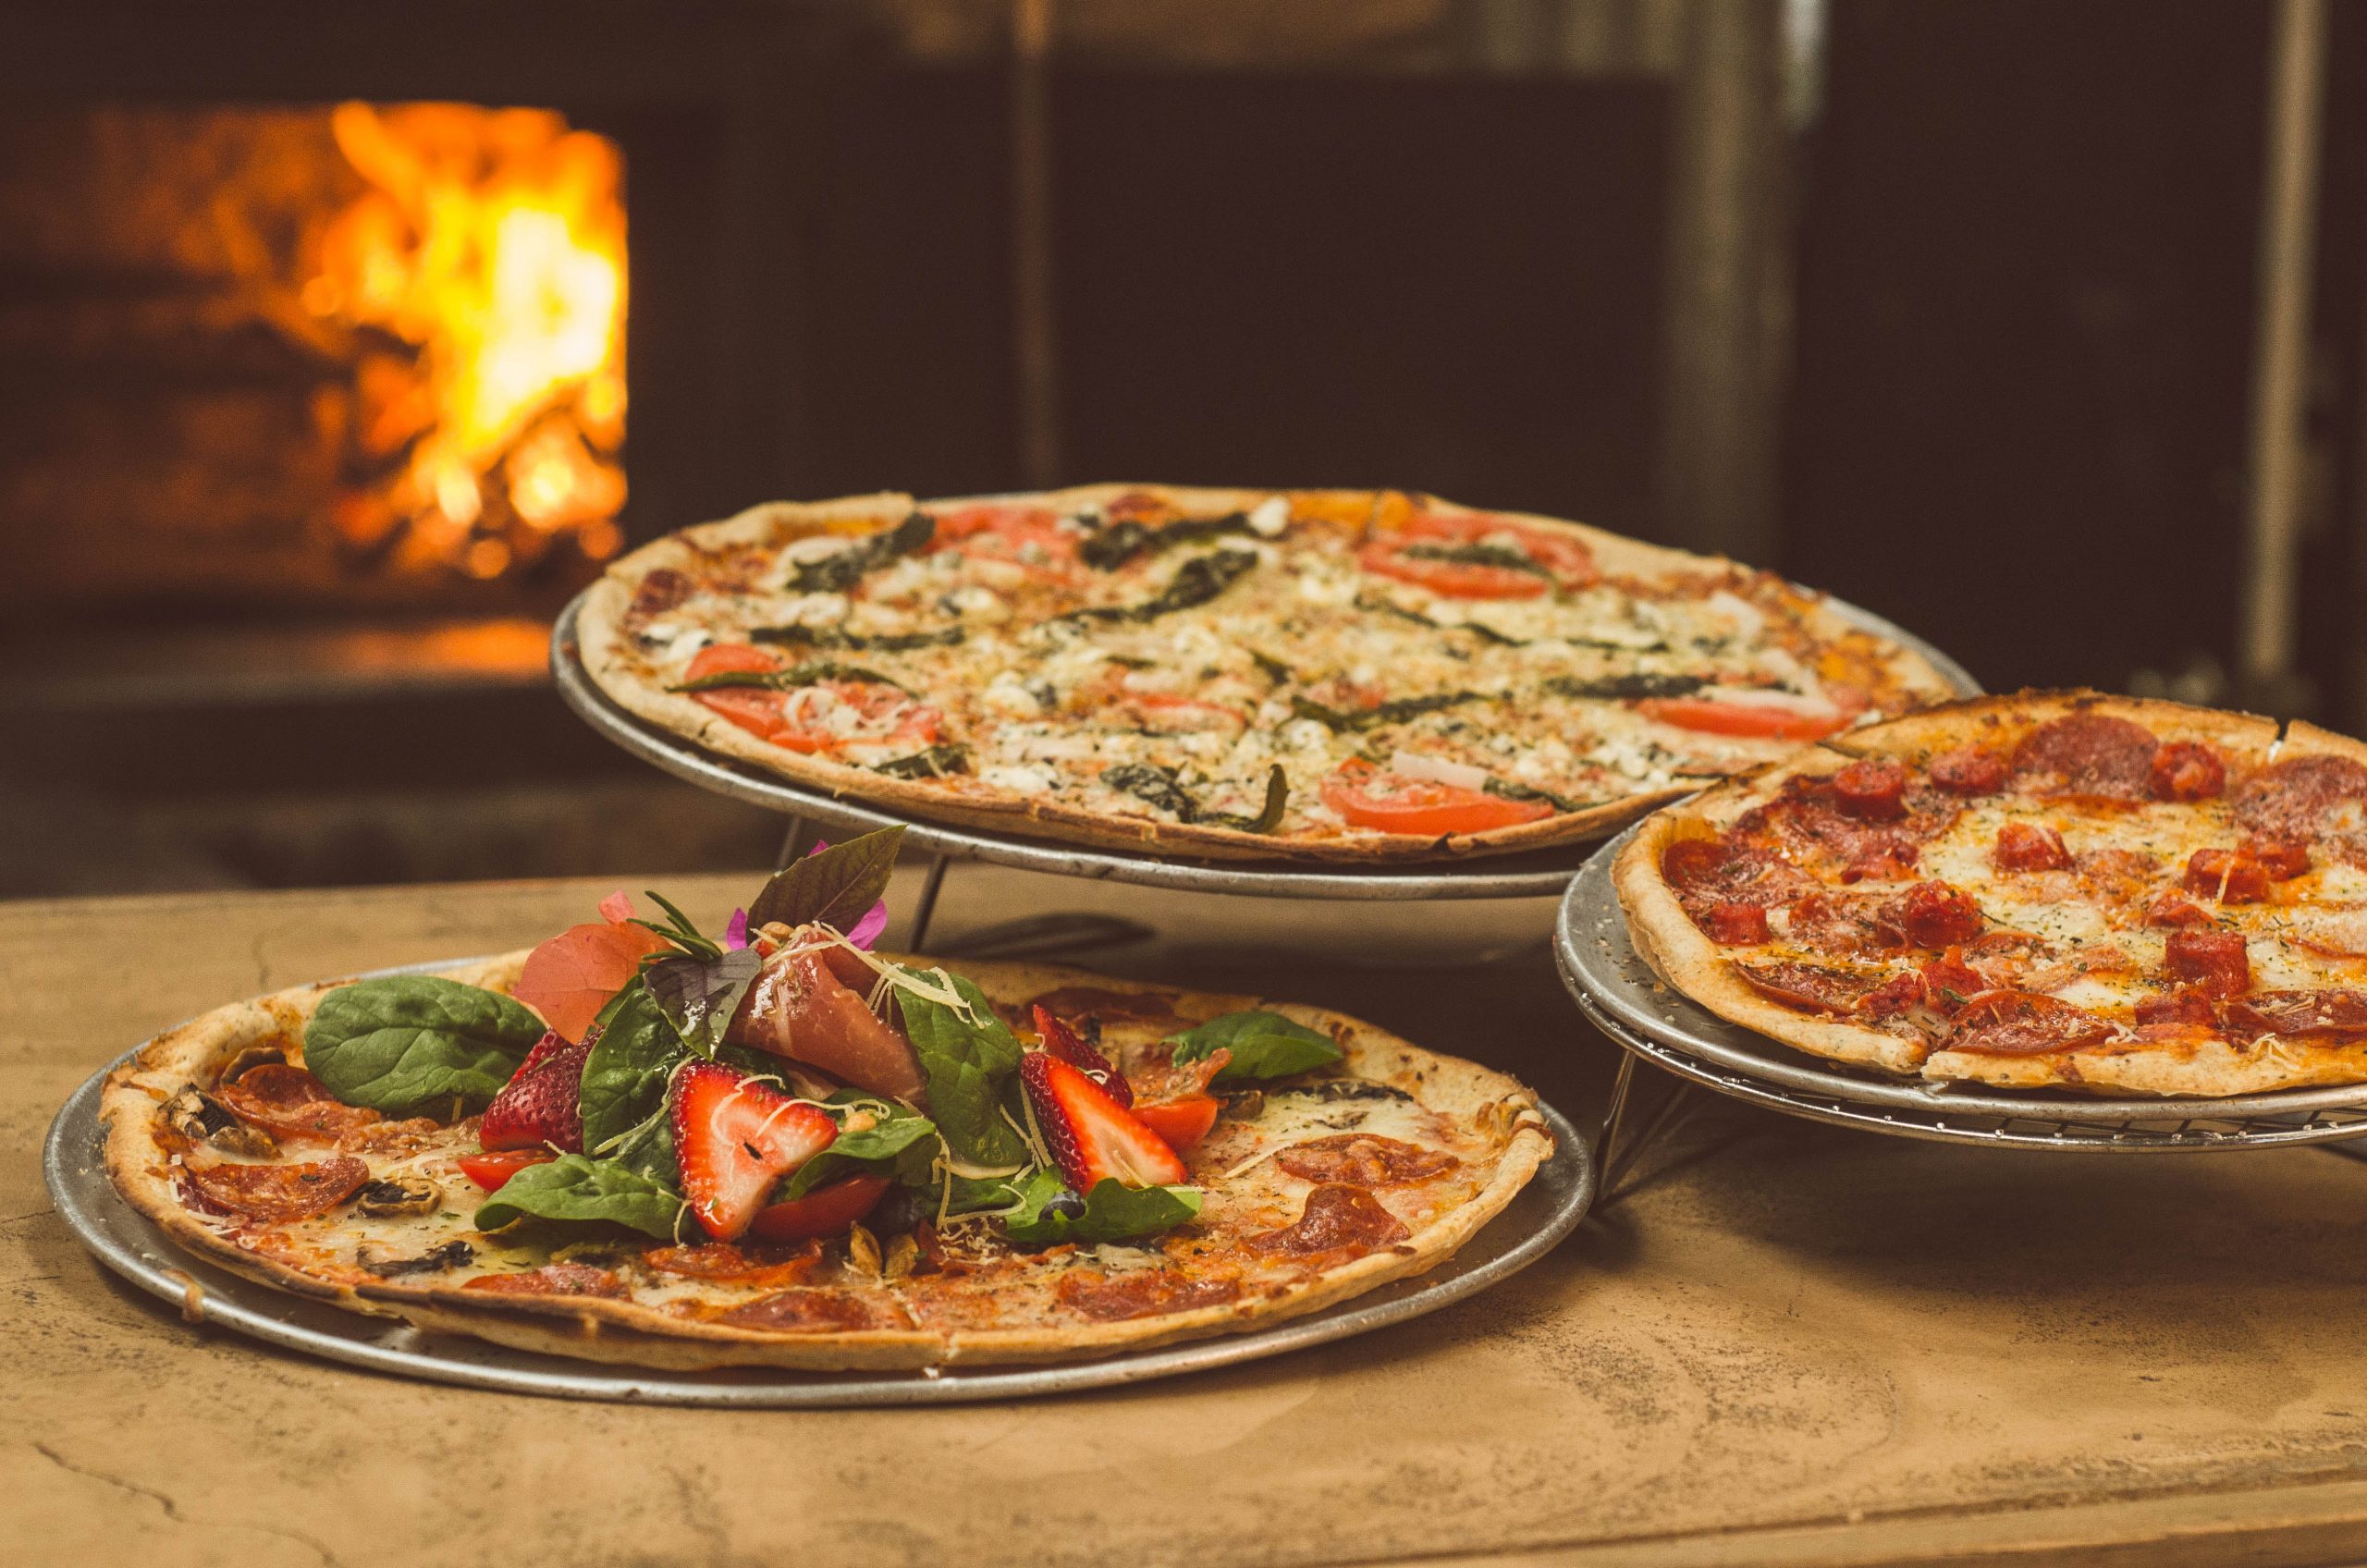 Międzynarodowy Dzień Pizzy: historia i ciekawostki o “królowej włoskich smaków”